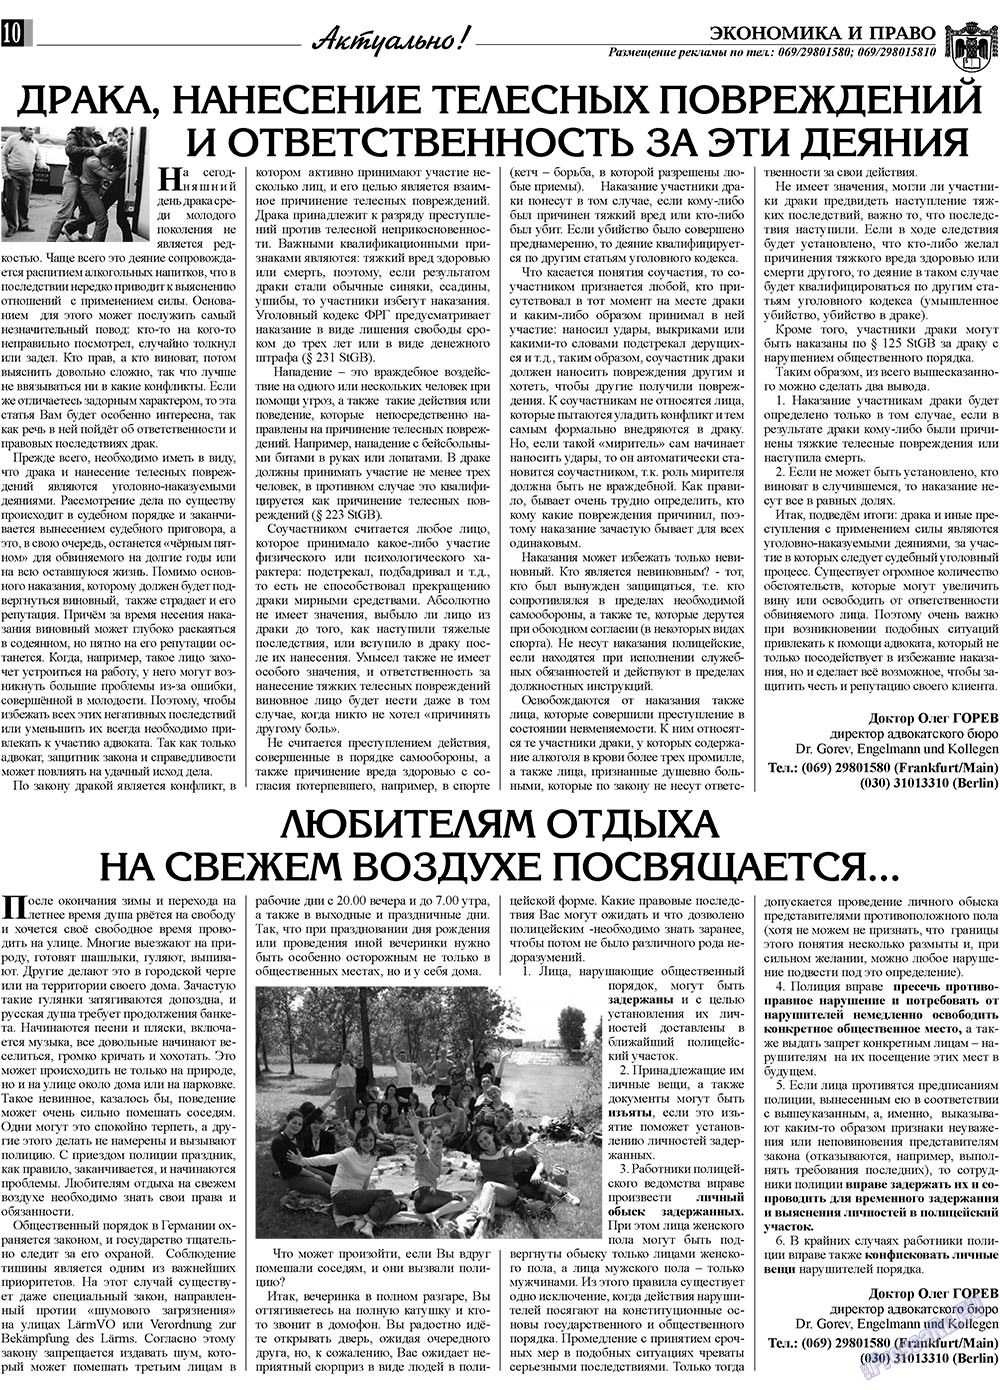 Экономика и право, газета. 2009 №6 стр.10